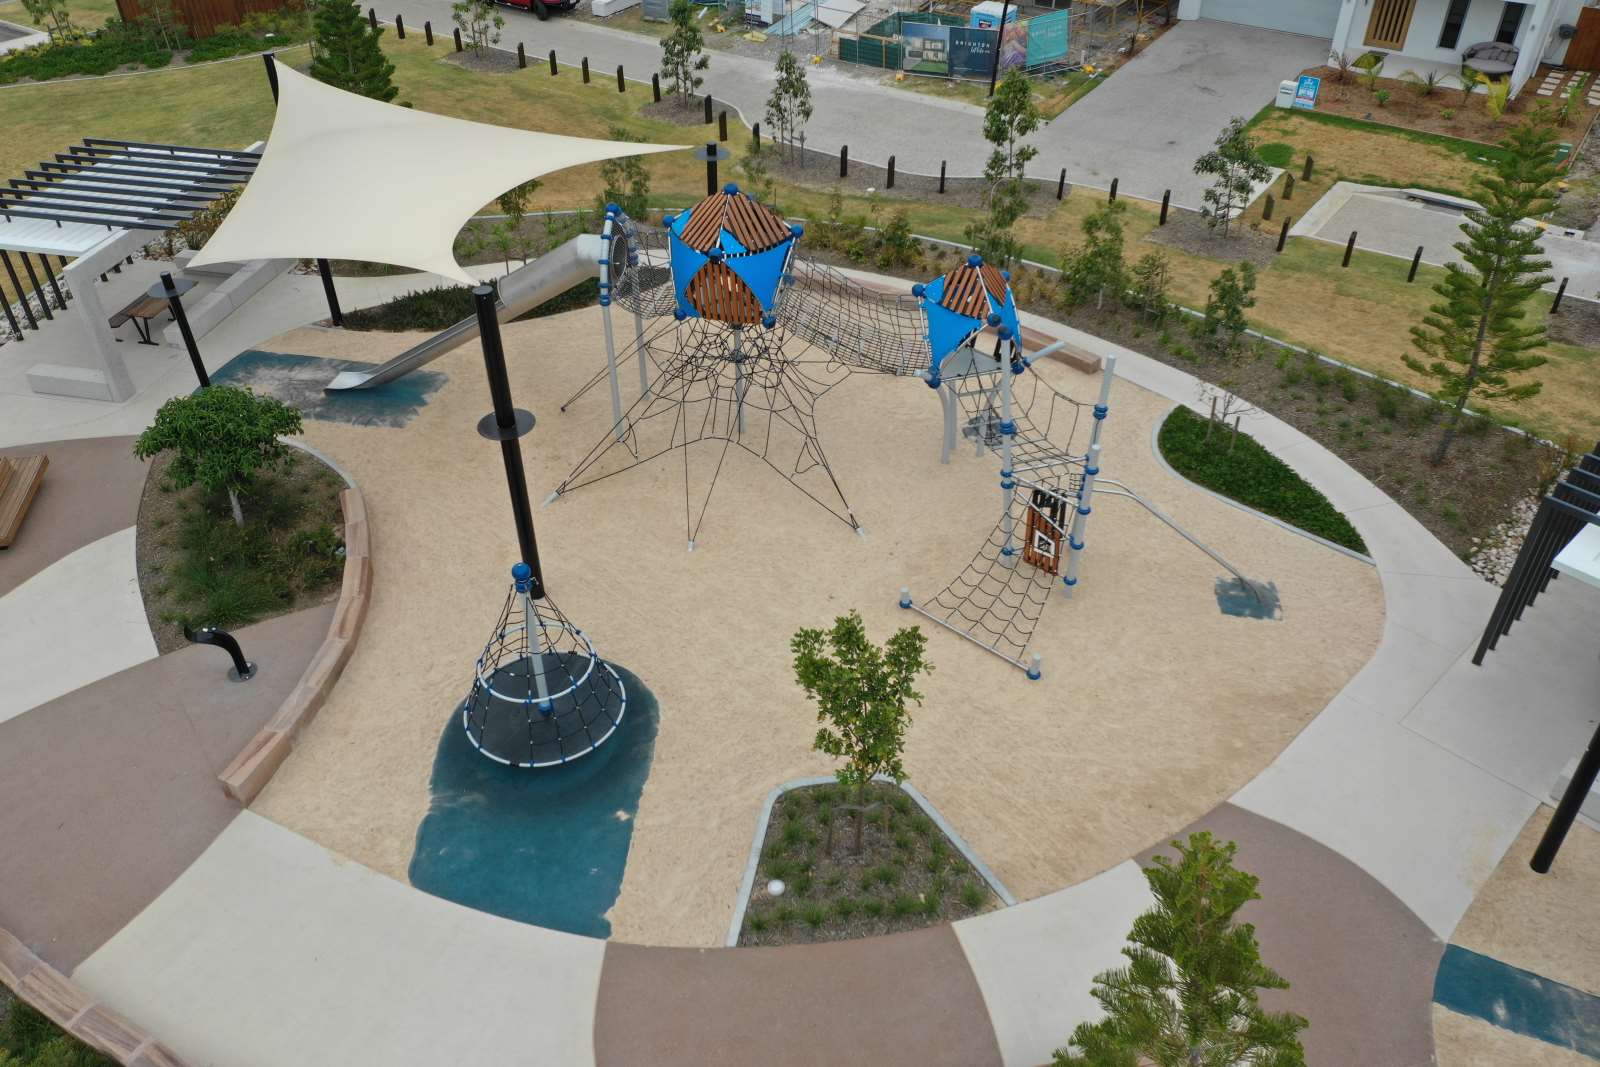 Public Park Play Spaces